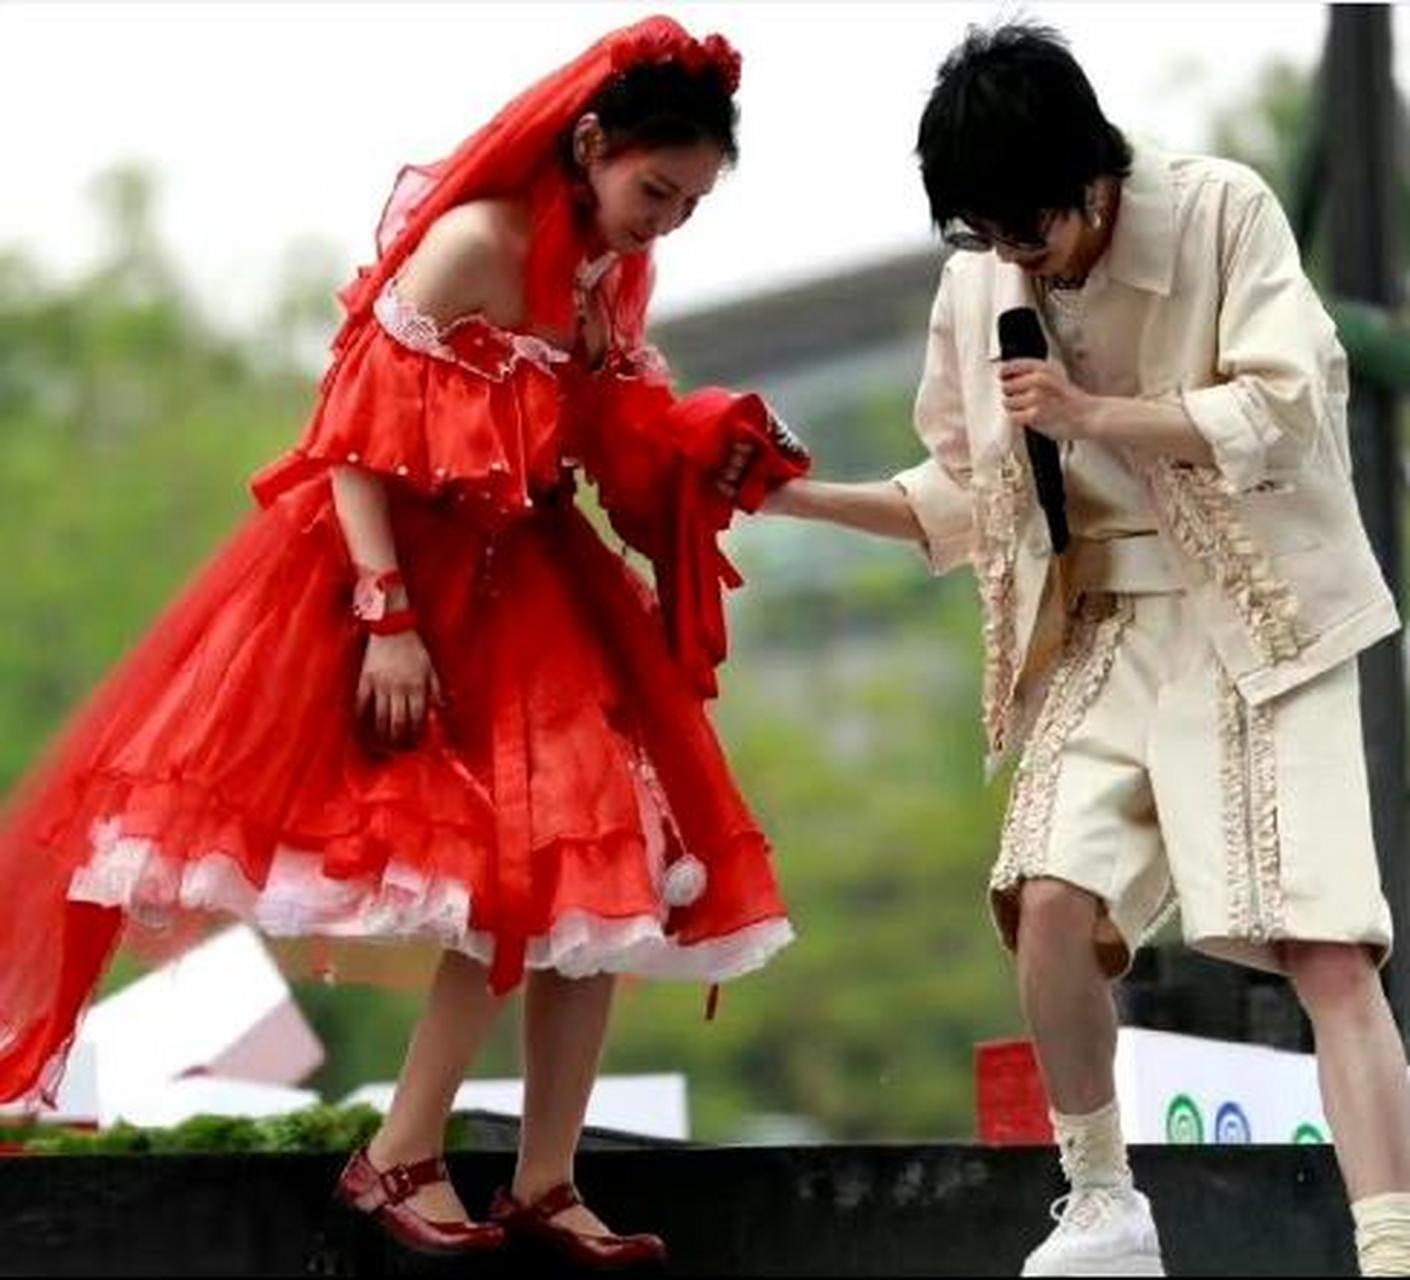 华晨宇火星演唱会:一位神秘女子身着红色婚纱,与偶像同台演出!